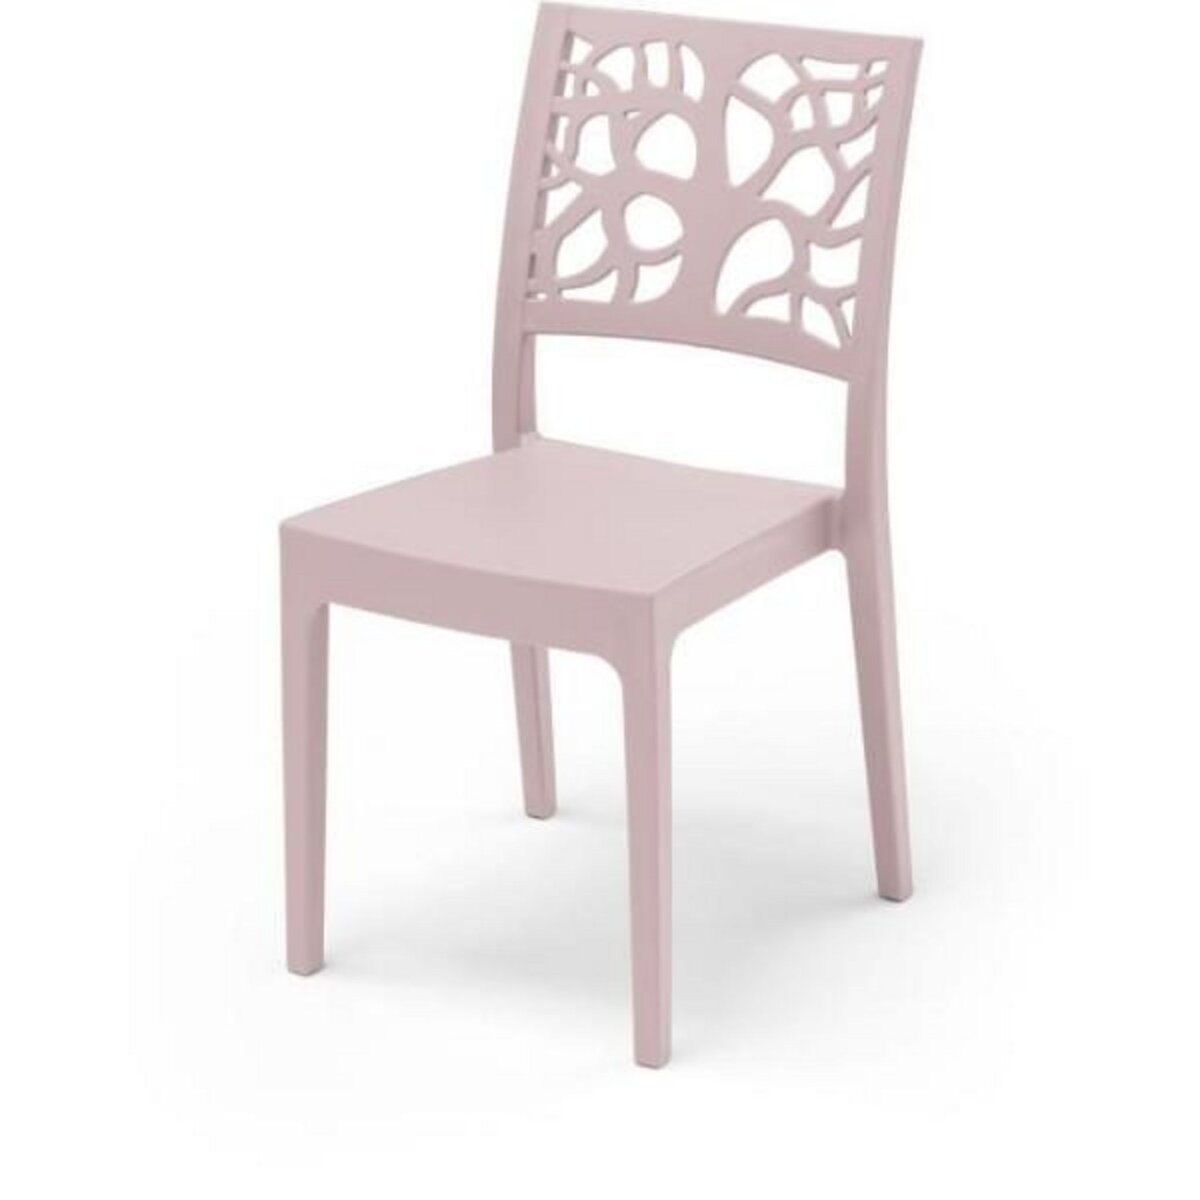 MARKET24 Chaise de jardin TETI ARETA - Rose pastel - Plastique résine - 52 x 46 x H 86 cm